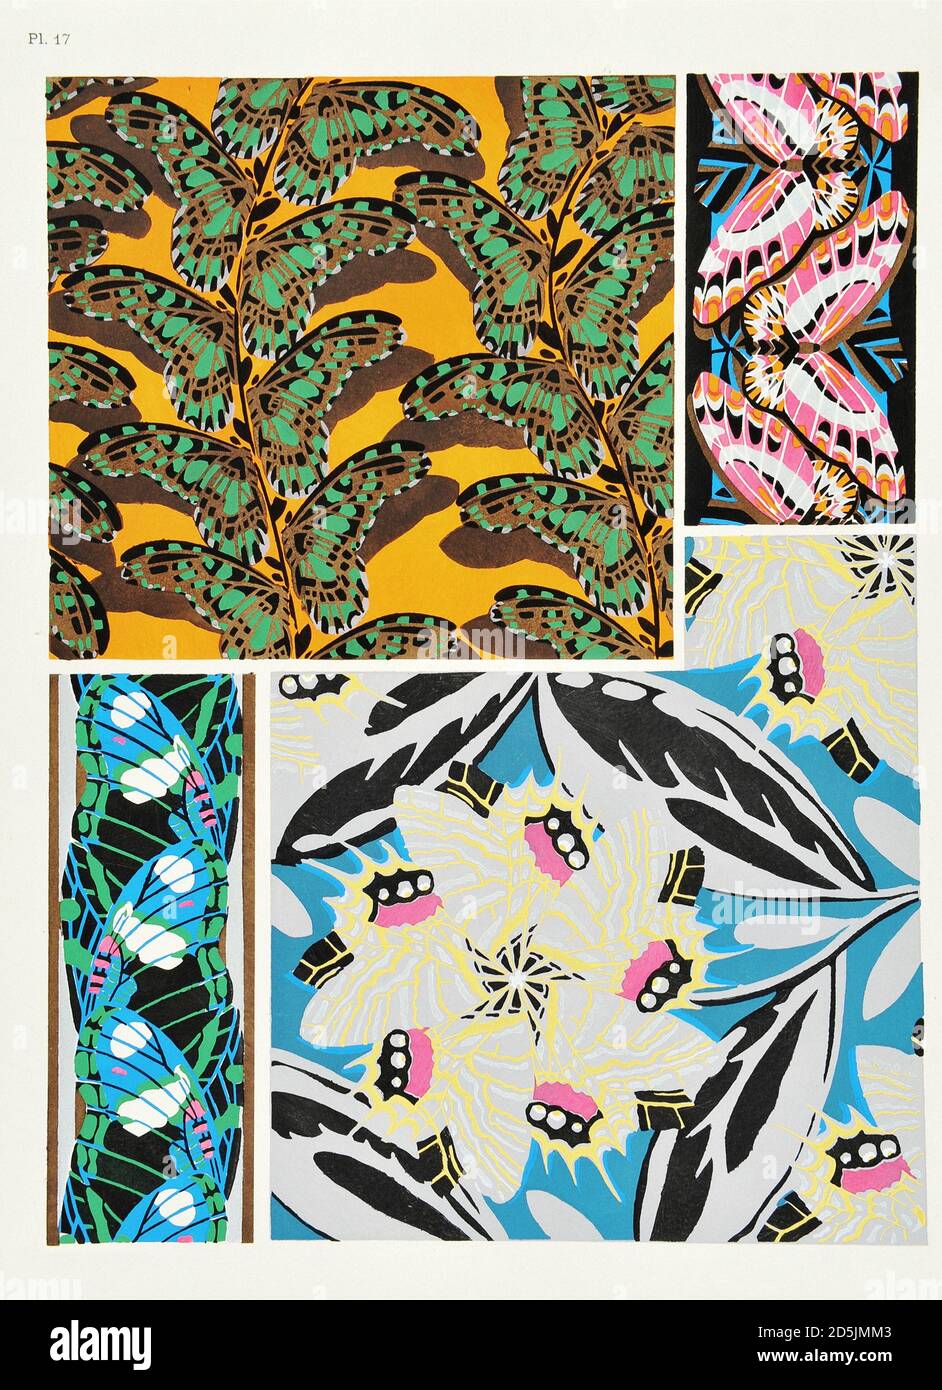 Farfalle: Venti pannelli fototype colorati al modello. PL XVII Tratto da un libro di Emile-Allain Segy (1877-1951). Parigi, Francia. 1925 Foto Stock